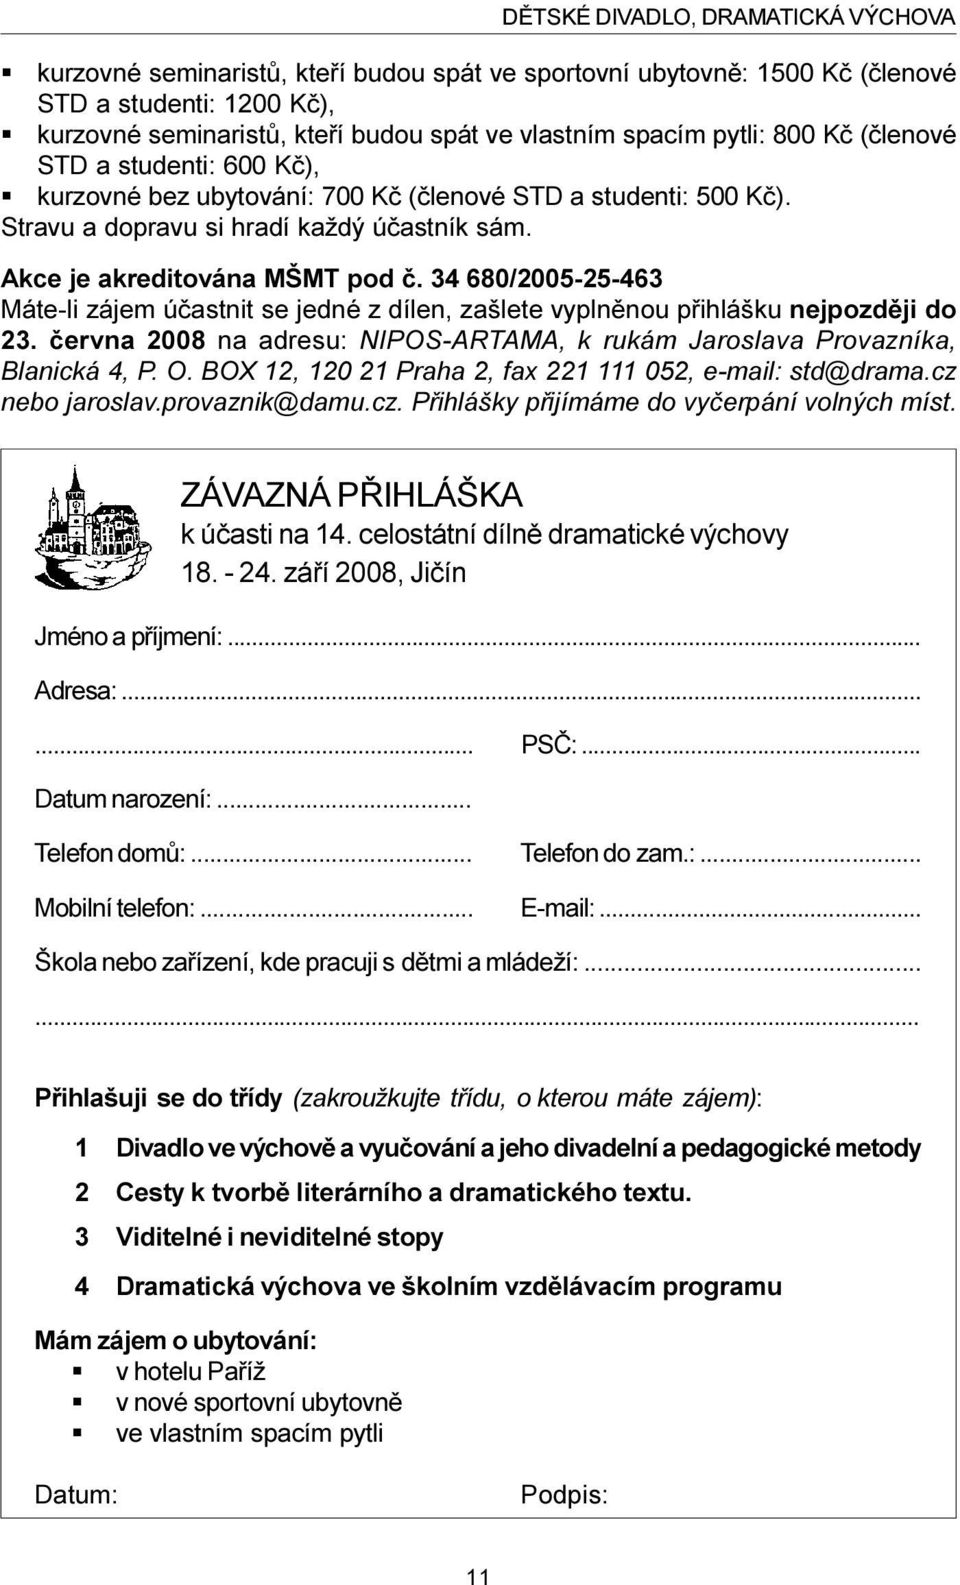 34 680/2005-25-463 Máte-li zájem úèastnit se jedné z dílen, zašlete vyplnìnou pøihlášku nejpozdìji do 23. èervna 2008 na adresu: NIPOS-ARTAMA, k rukám Jaroslava Provazníka, Blanická 4, P. O.